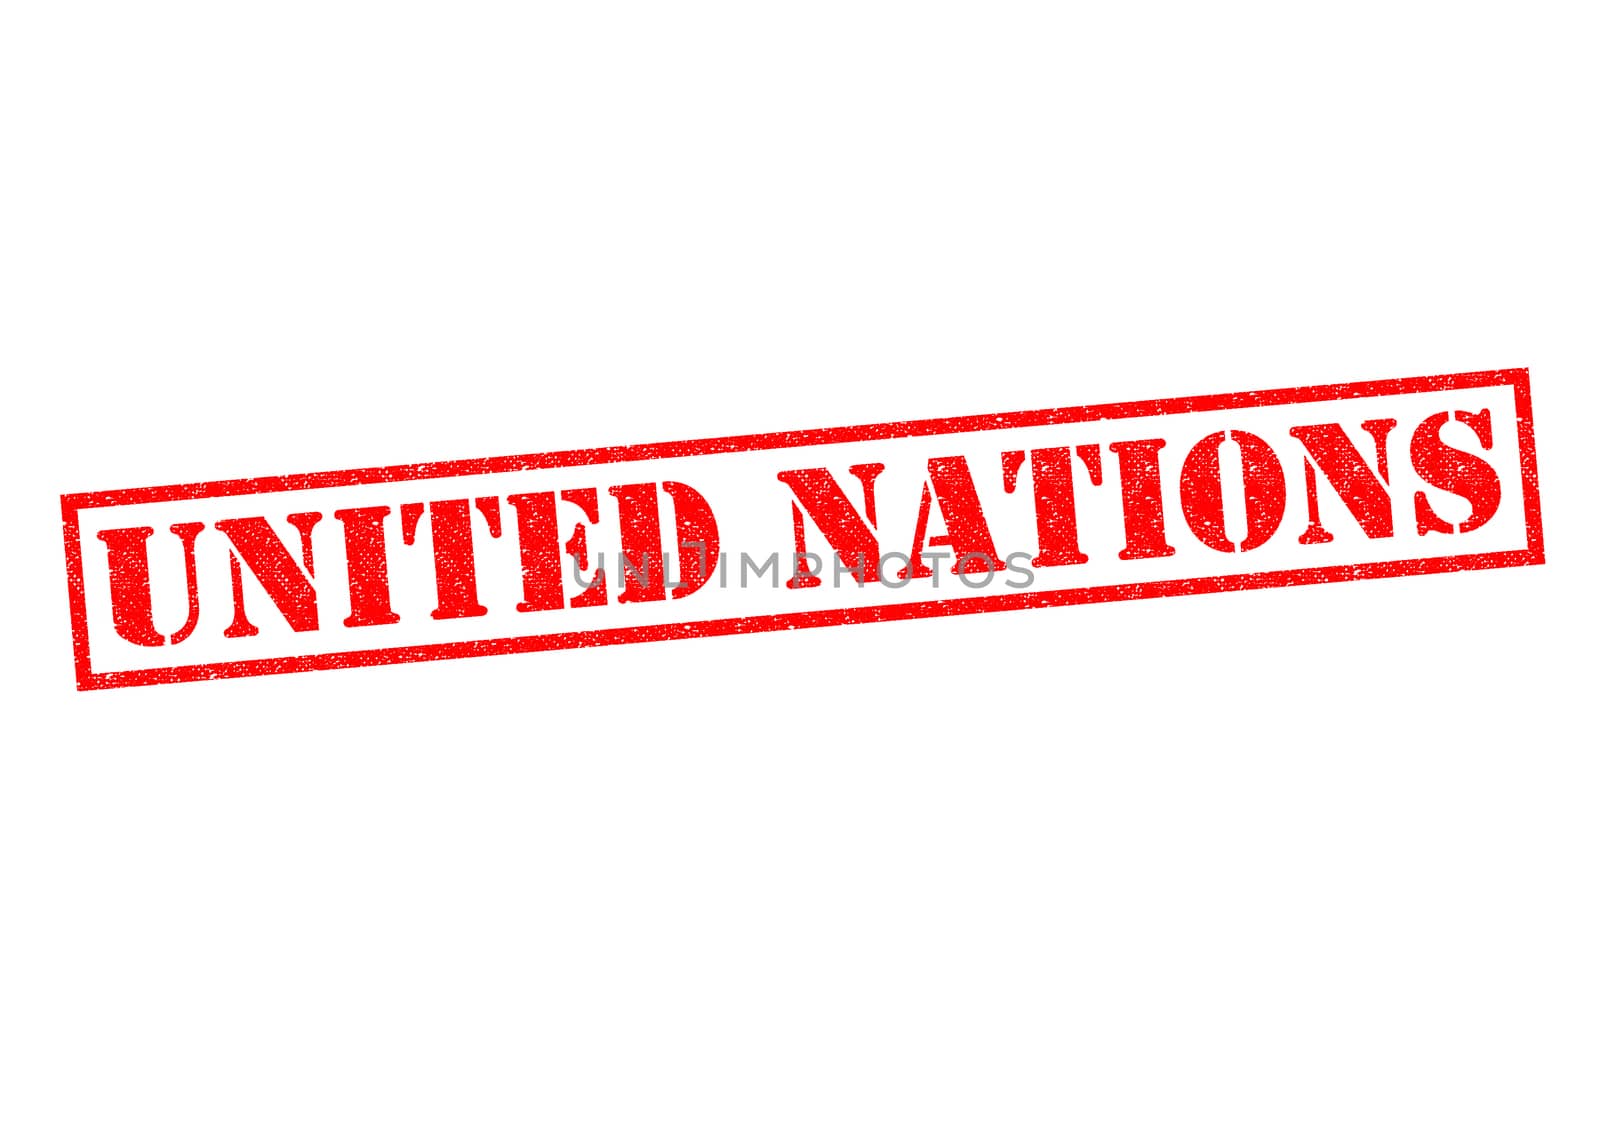 UNITED NATIONS Stamp by chrisdorney